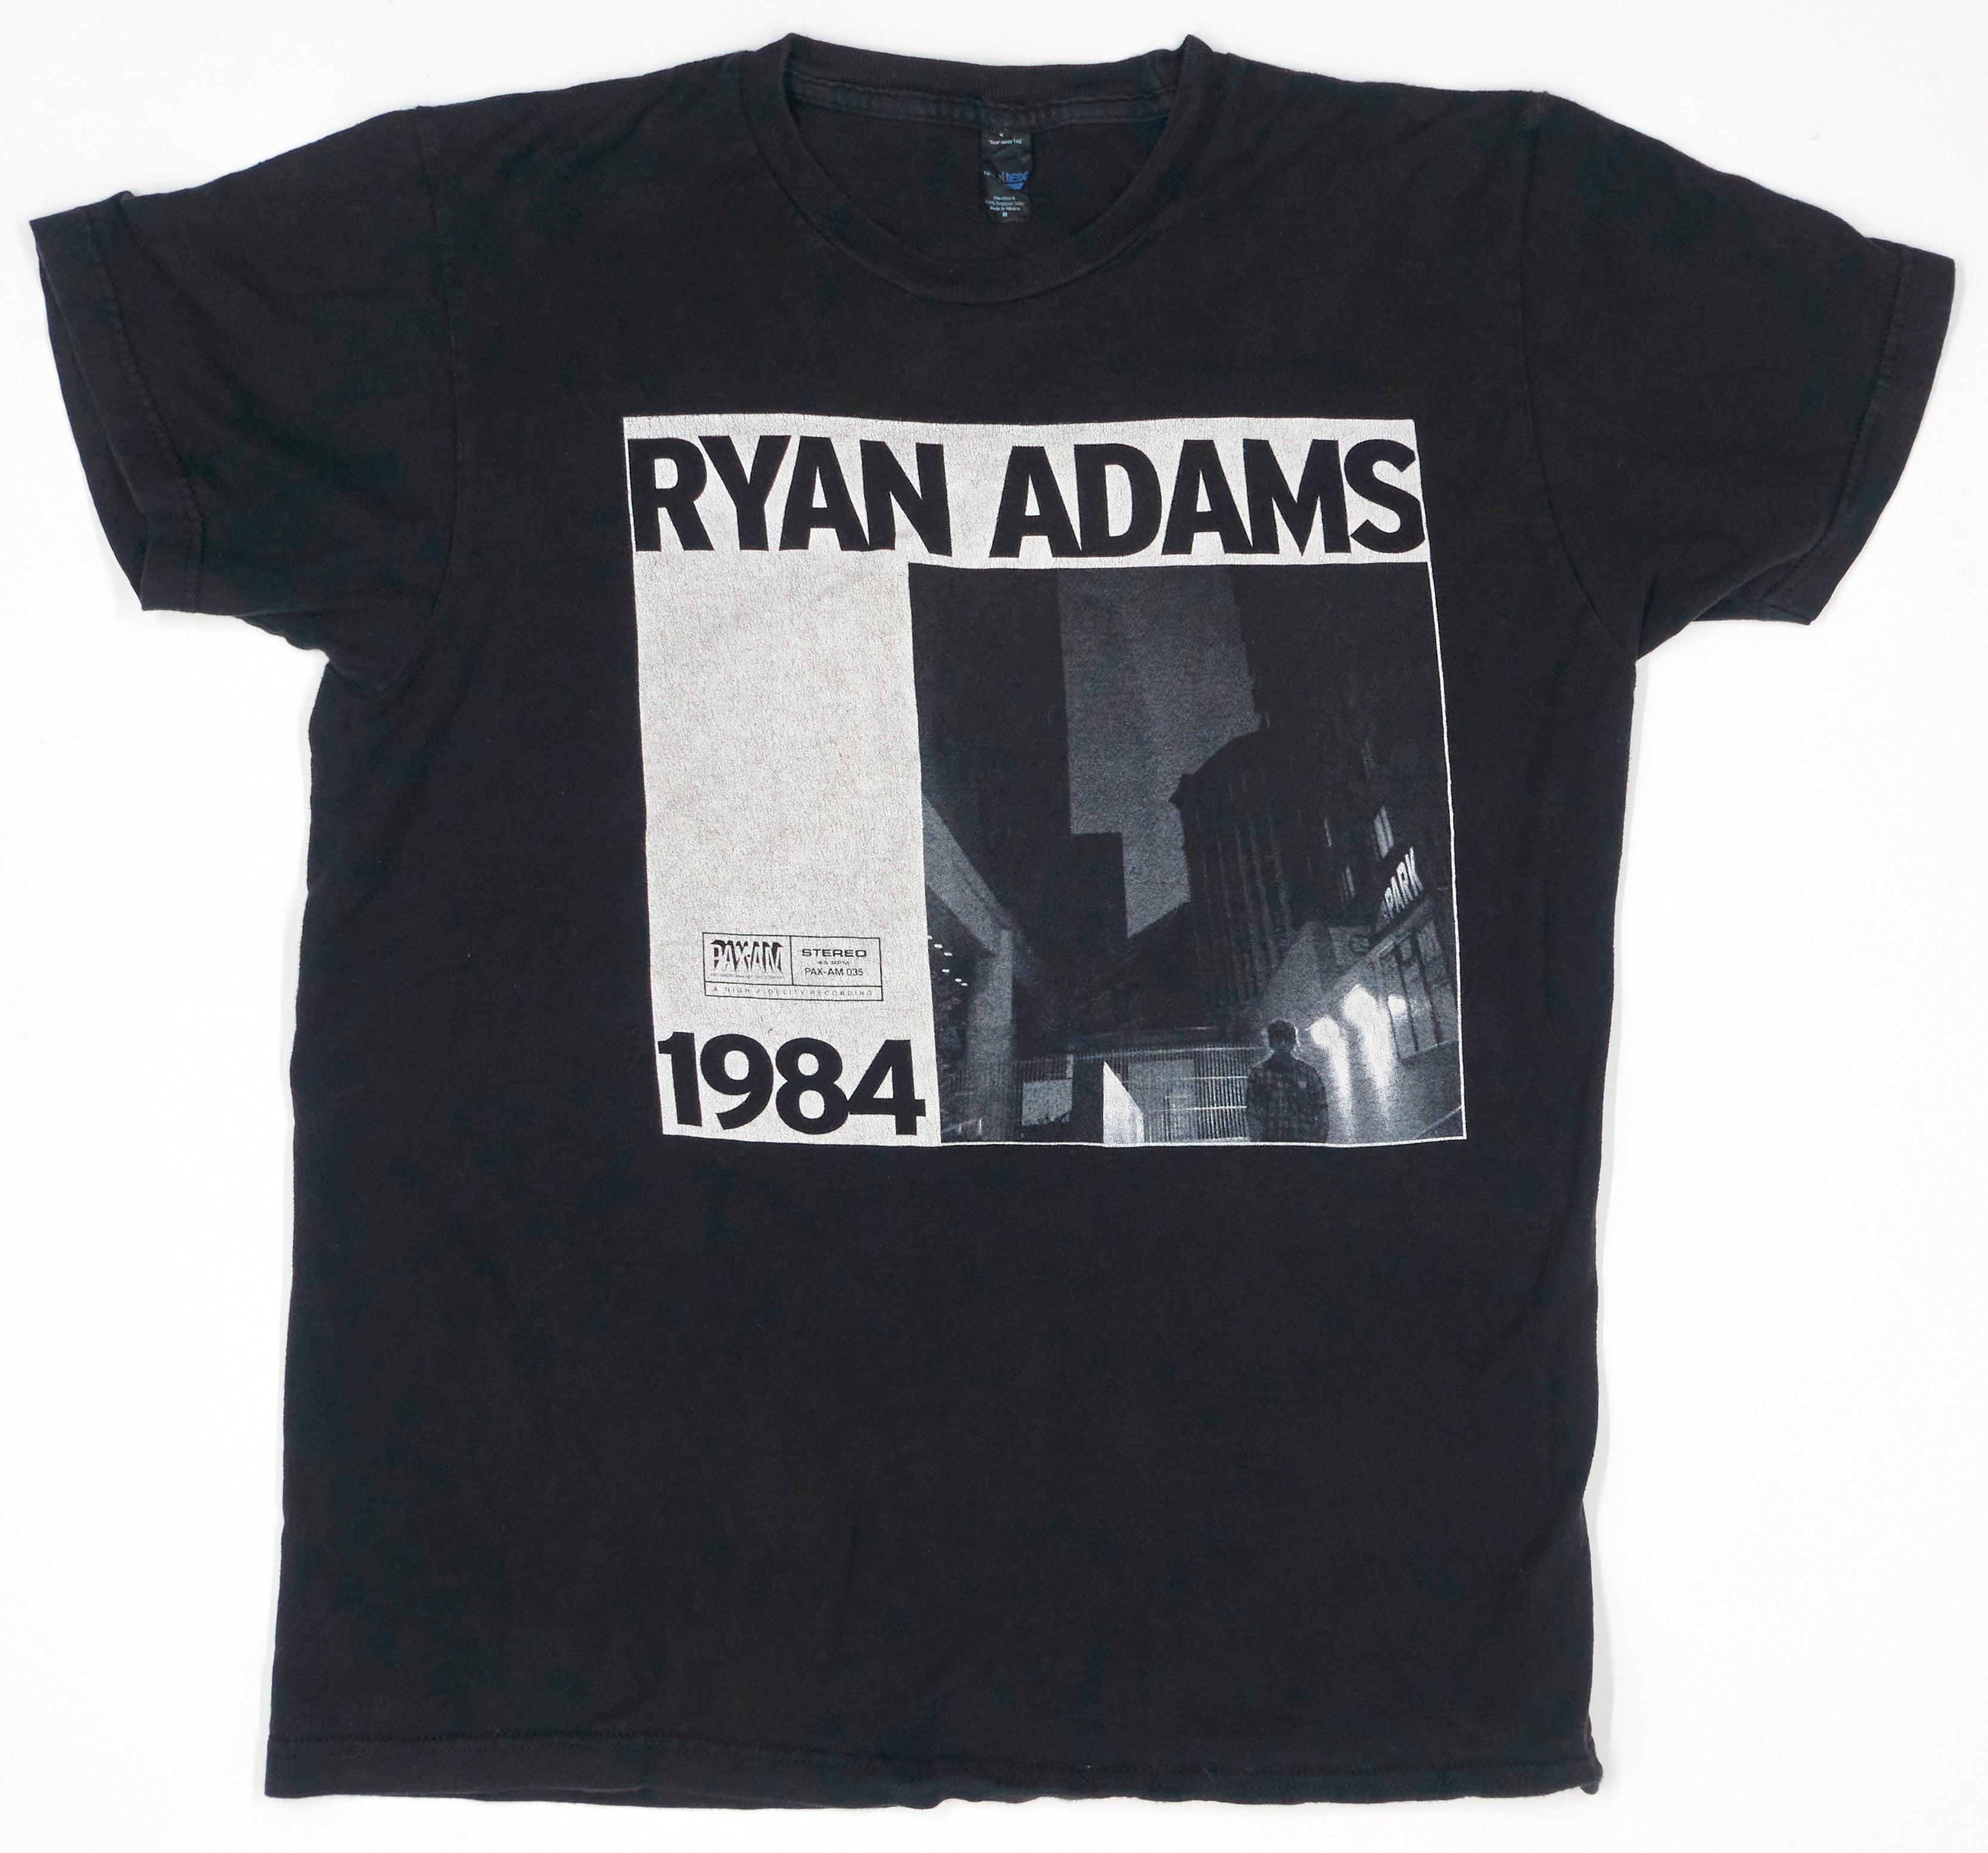 Ryan Adams – 1984 2041 Tour Shirt Size Medium